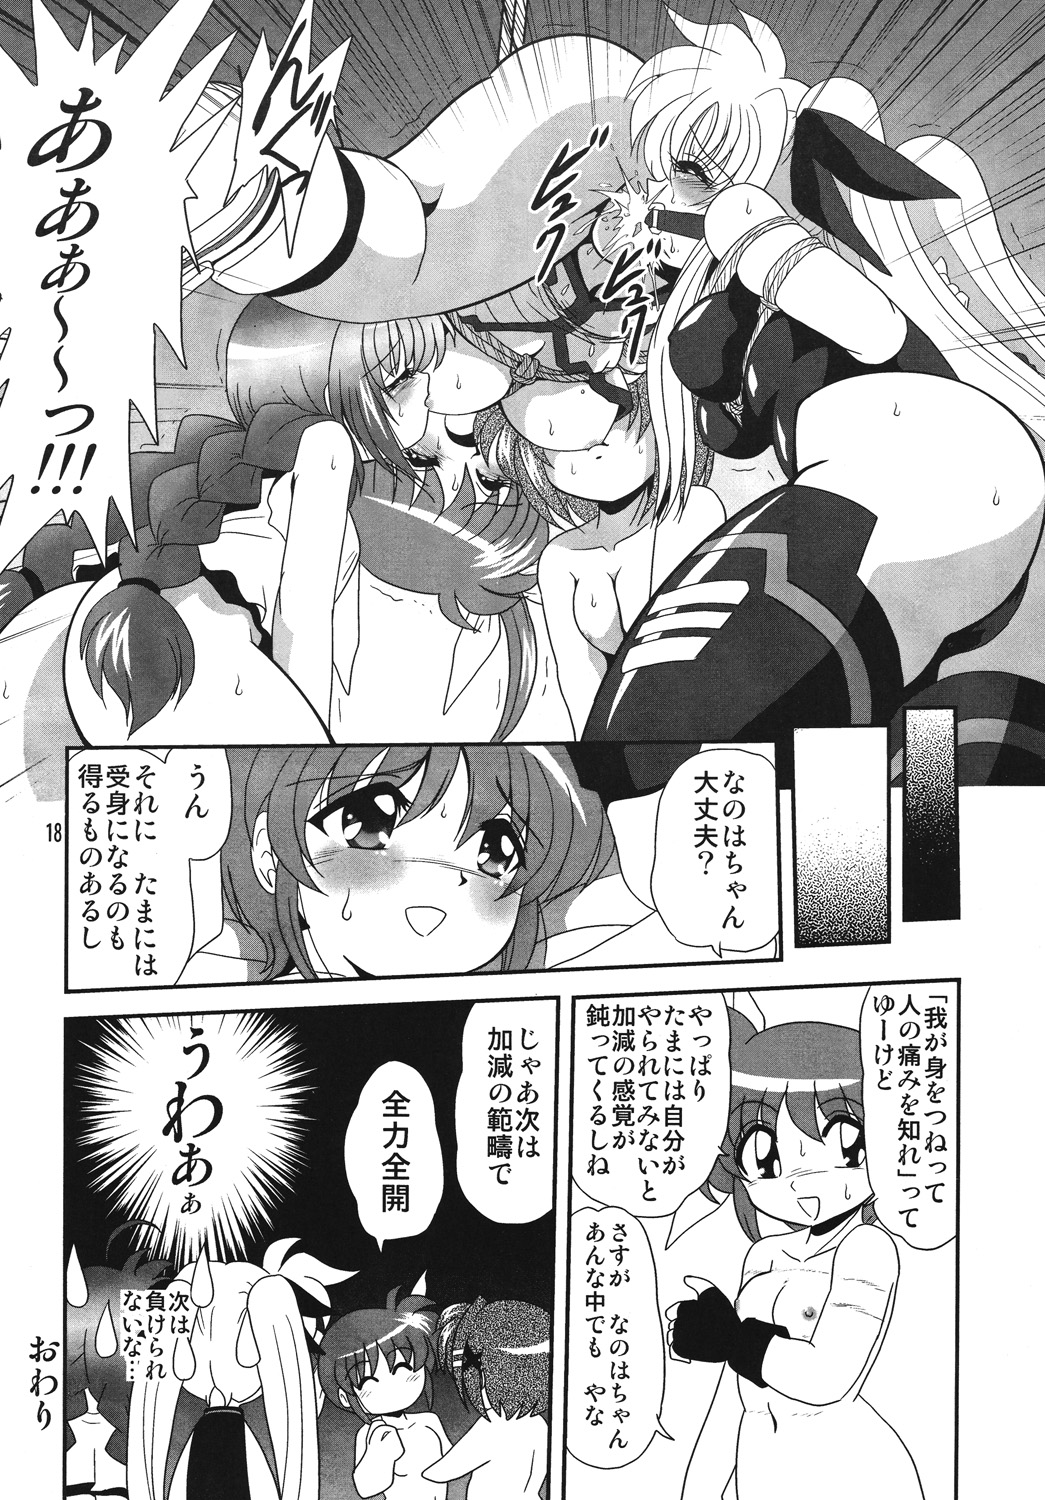 [Thirty Saver Street 2D Shooting] Storage Ignition 4 (Mahou Shoujo Lyrical Nanoha / Magical Girl Lyrical Nanoha) page 17 full